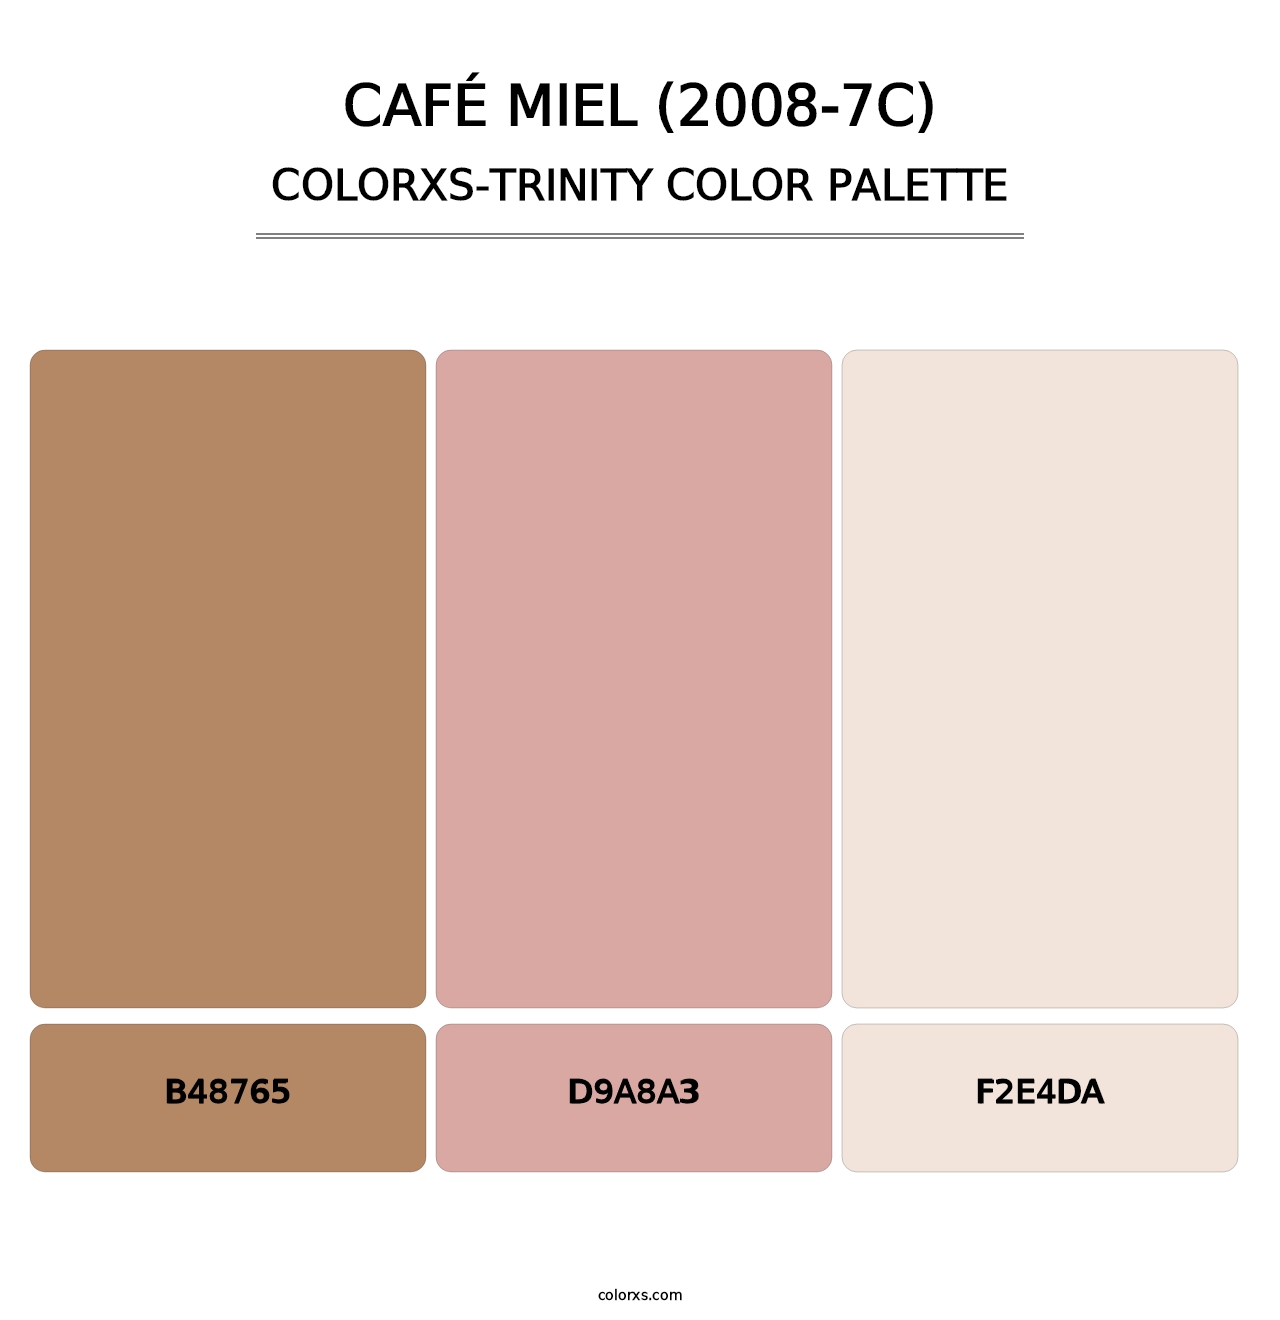 Café Miel (2008-7C) - Colorxs Trinity Palette